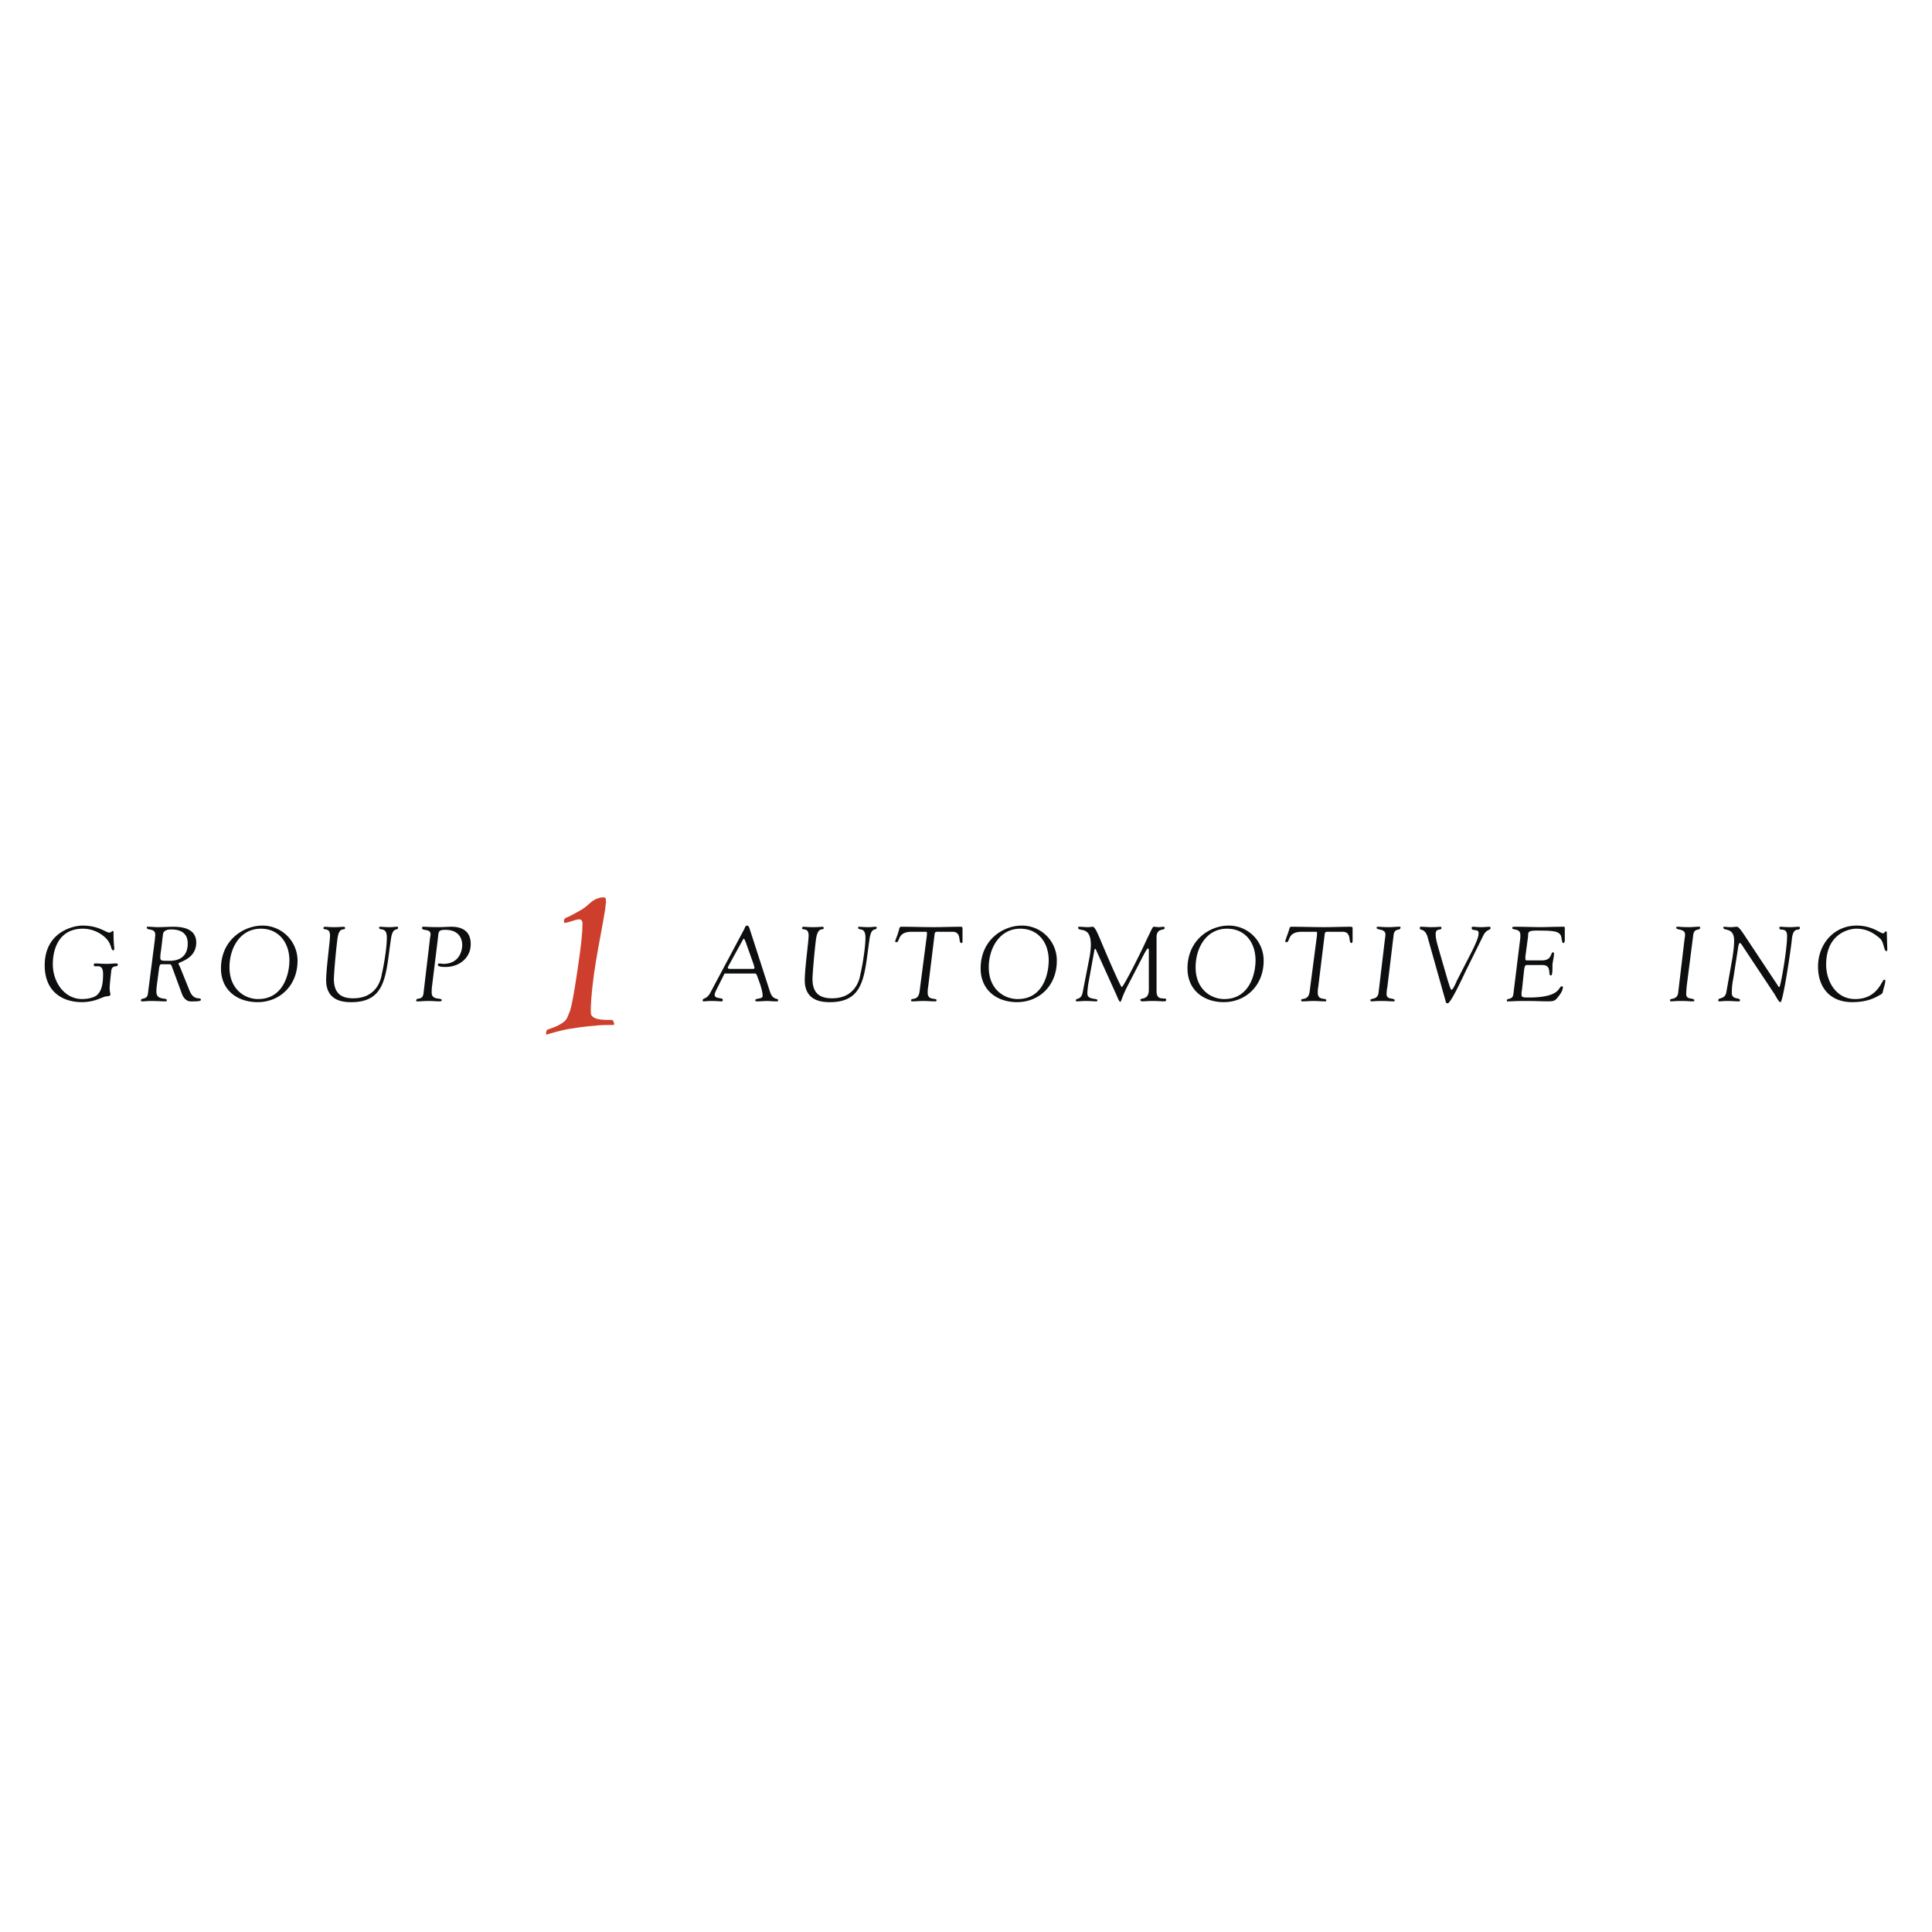 Group 1 Automotive logo colors